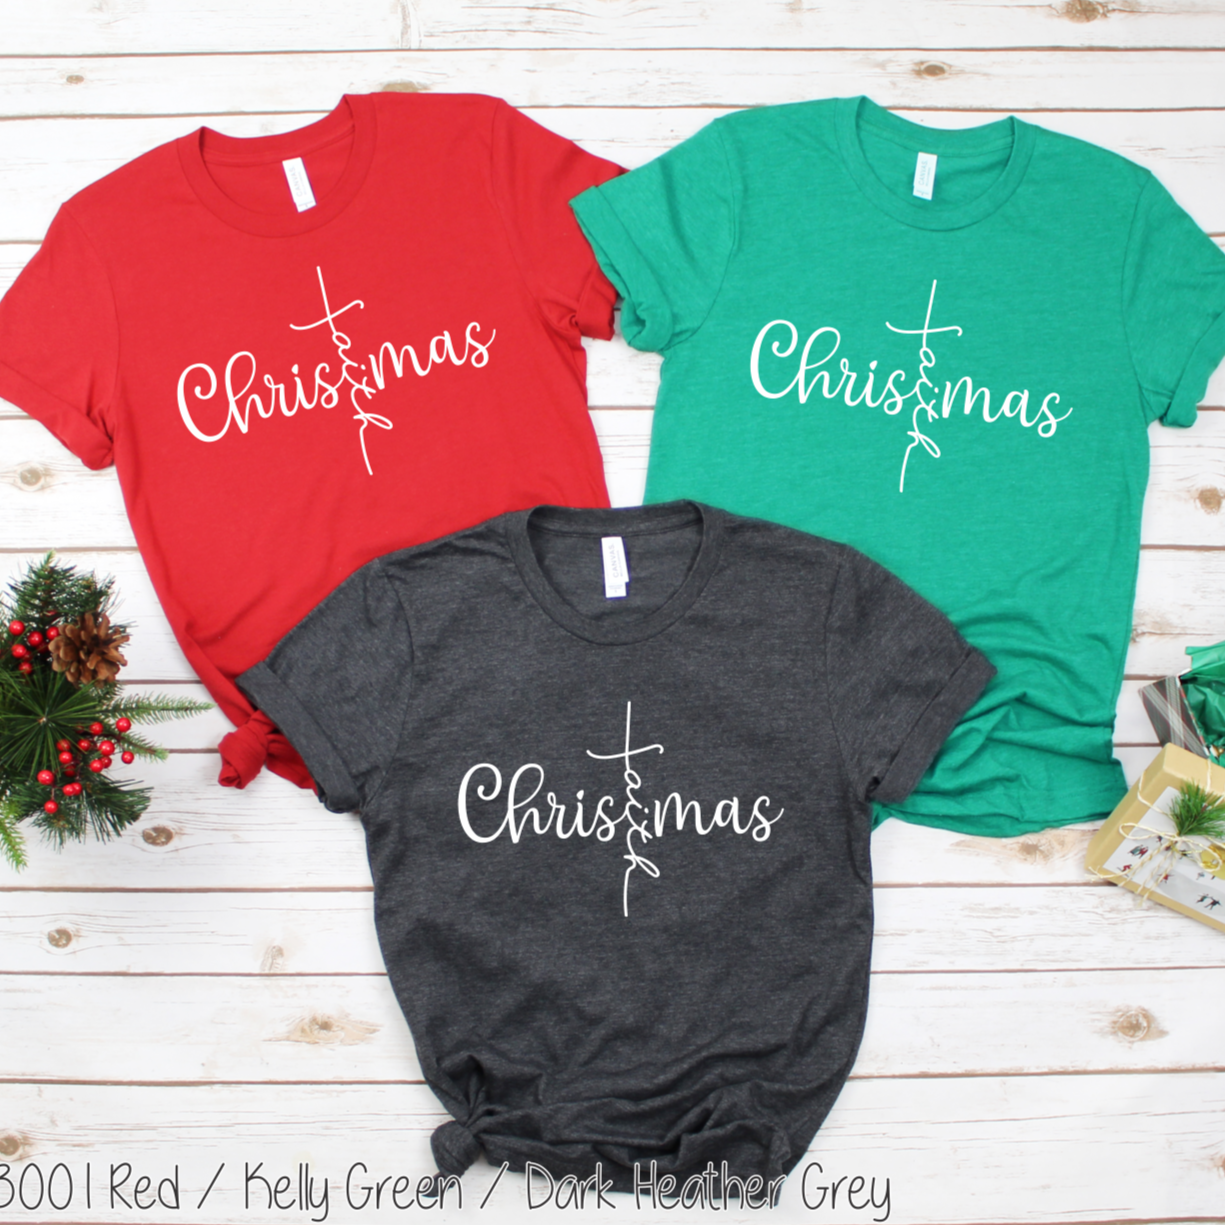 "Christmas Faith Cross" T-shirt [Choose from Short or Long Sleeve]